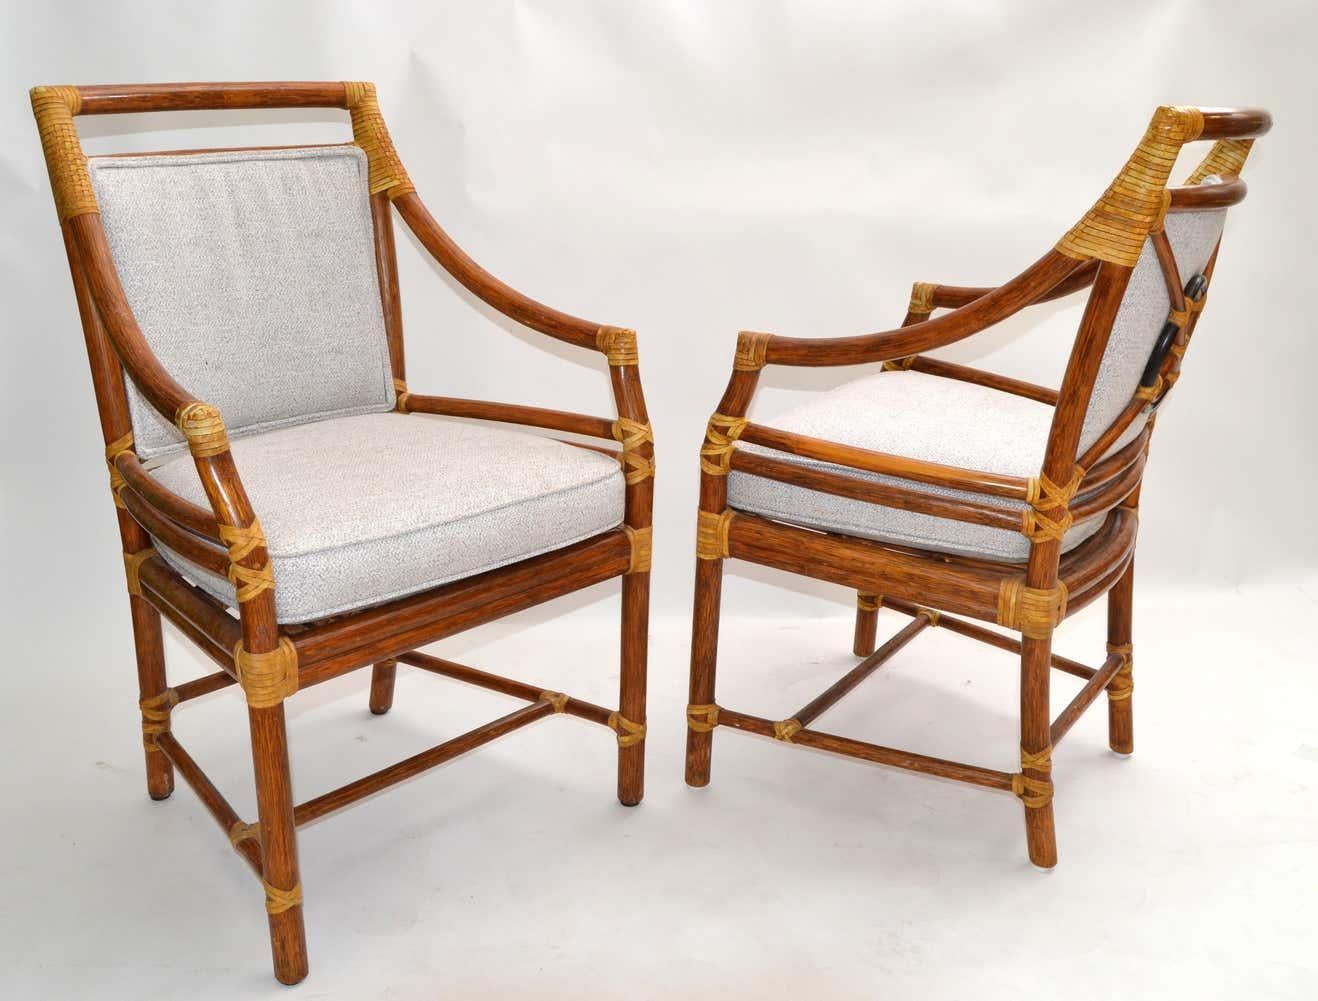 Ein Paar original McGuire Sessel aus Bambus und handgeflochtenem Schilfrohr, ein Esszimmerstuhl mit Lederbezug.
Die Polsterung ist ein beigefarbener Bouclé-Stoff und die Rückenlehne ist ein echter Hingucker.
Darunter ist ein McGuire-Metallschild